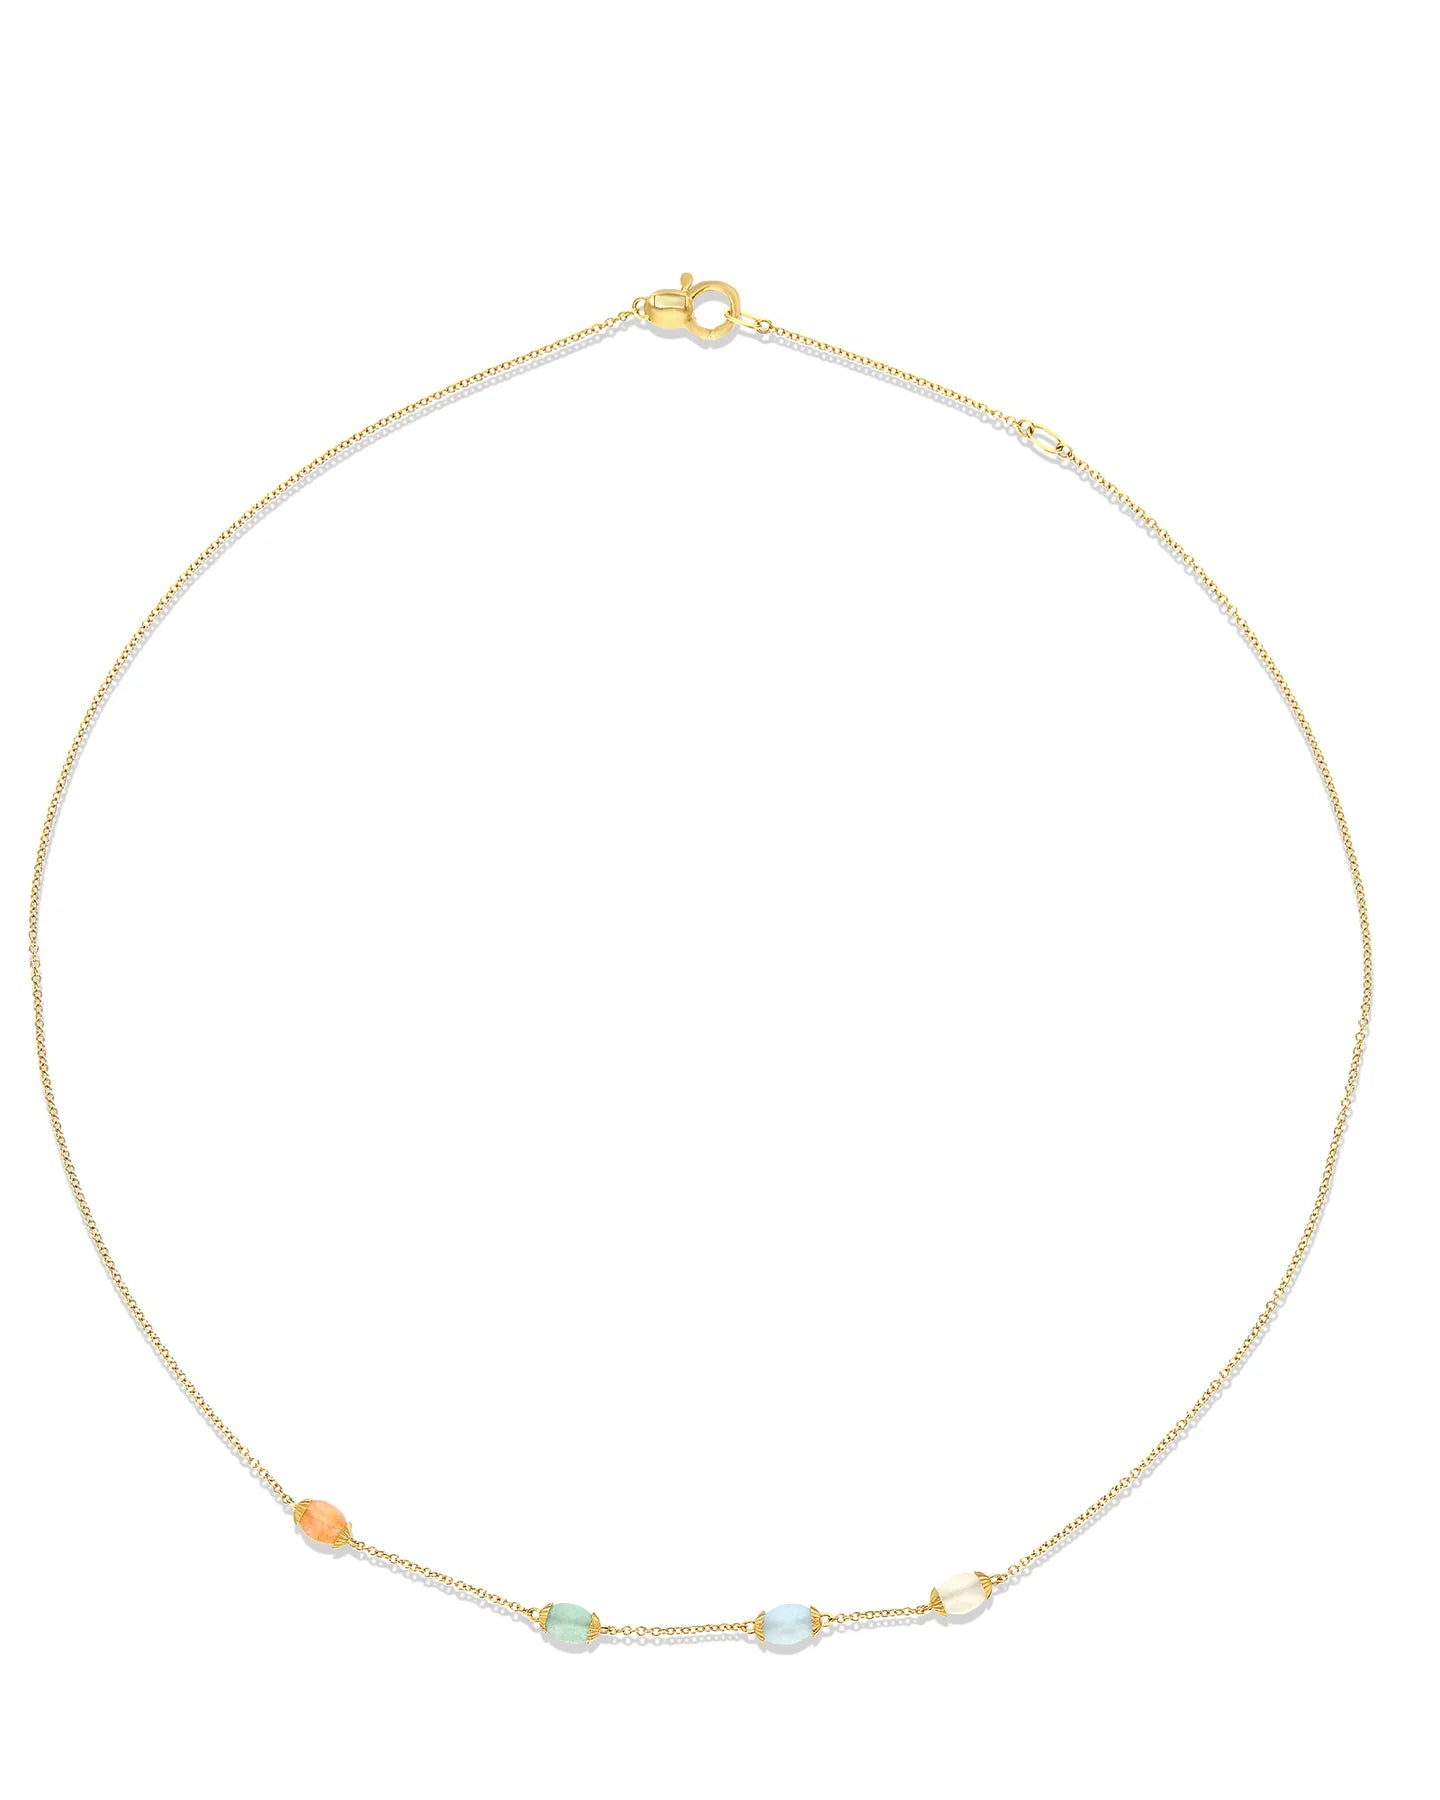 Gelbgold-Halskette mit Mondstein, Aventurin und Aquamarin „Regenbogen“